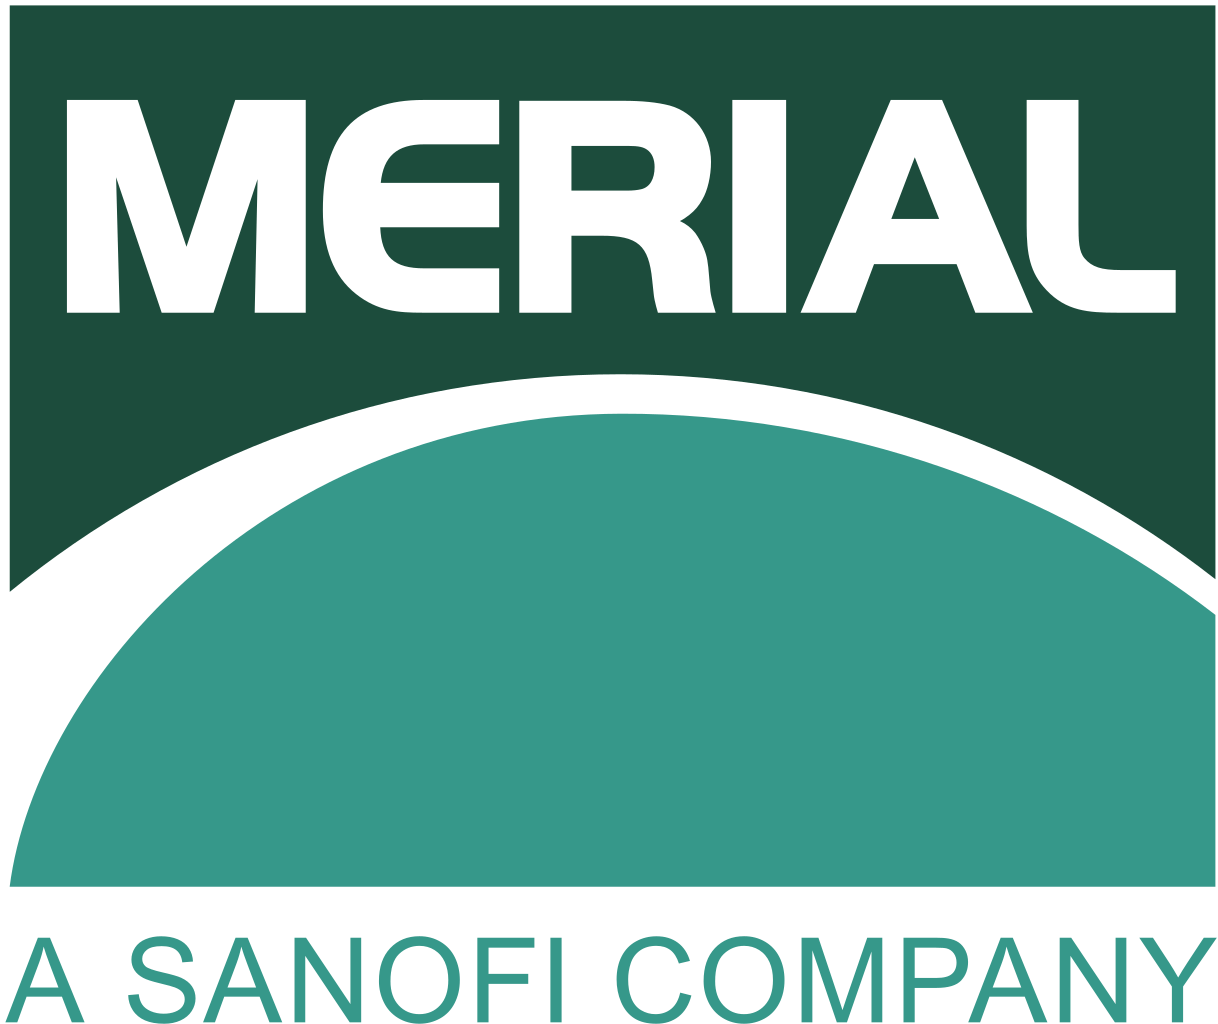 Sanofi Logo - File:Merial Sanofi logo.svg